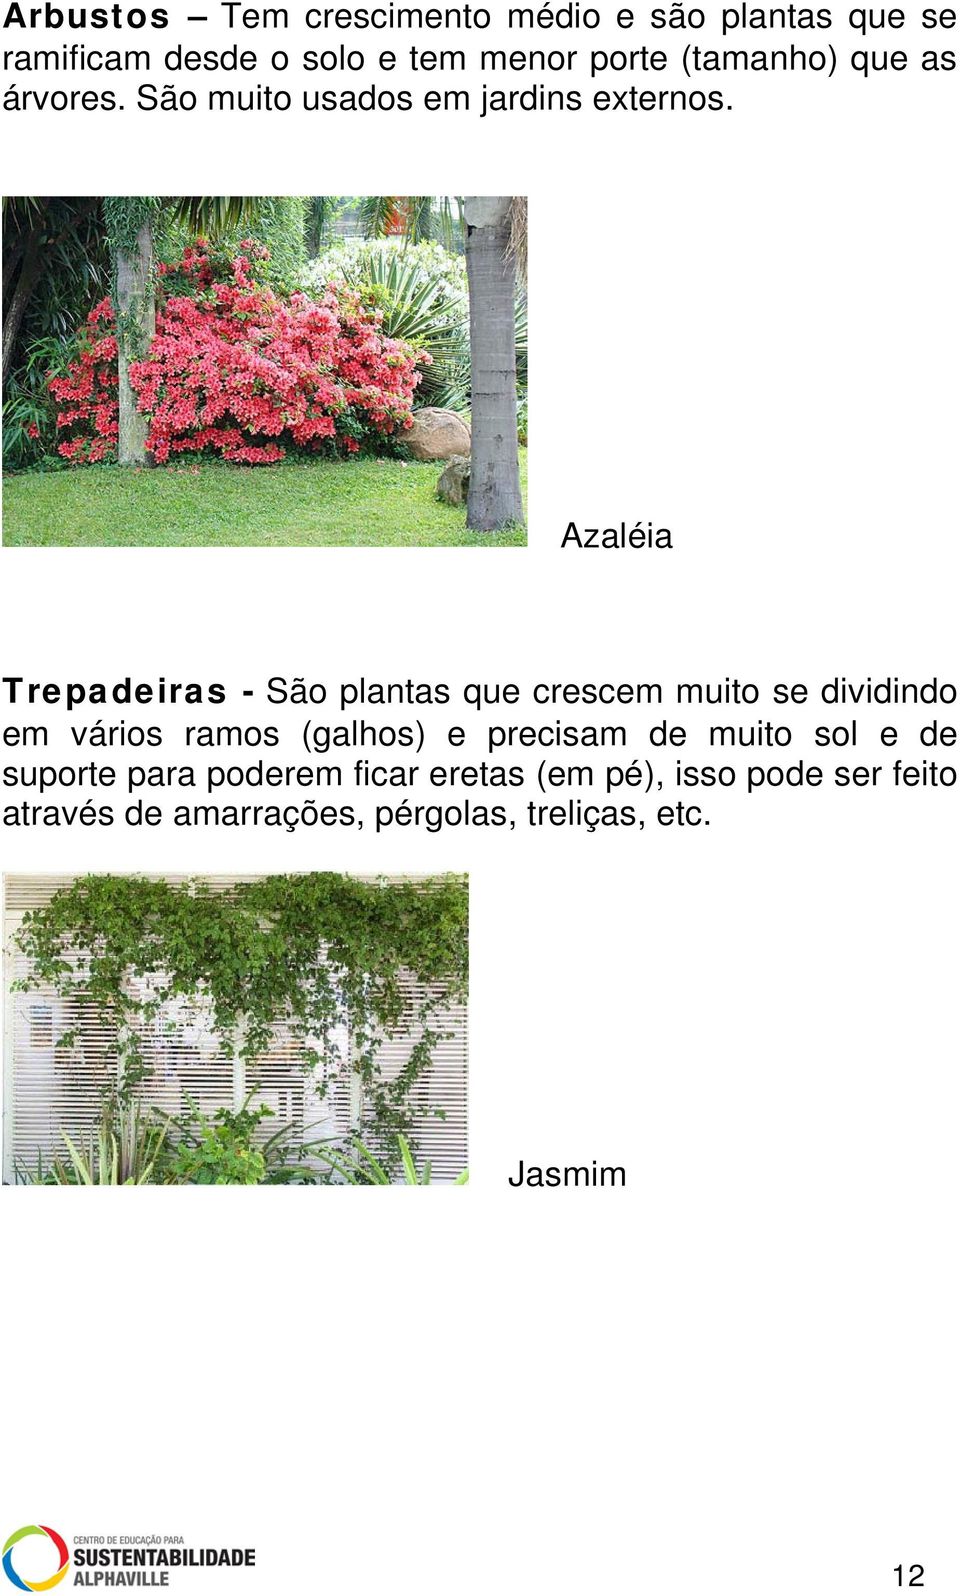 Azaléia Trepadeiras - São plantas que crescem muito se dividindo em vários ramos (galhos) e